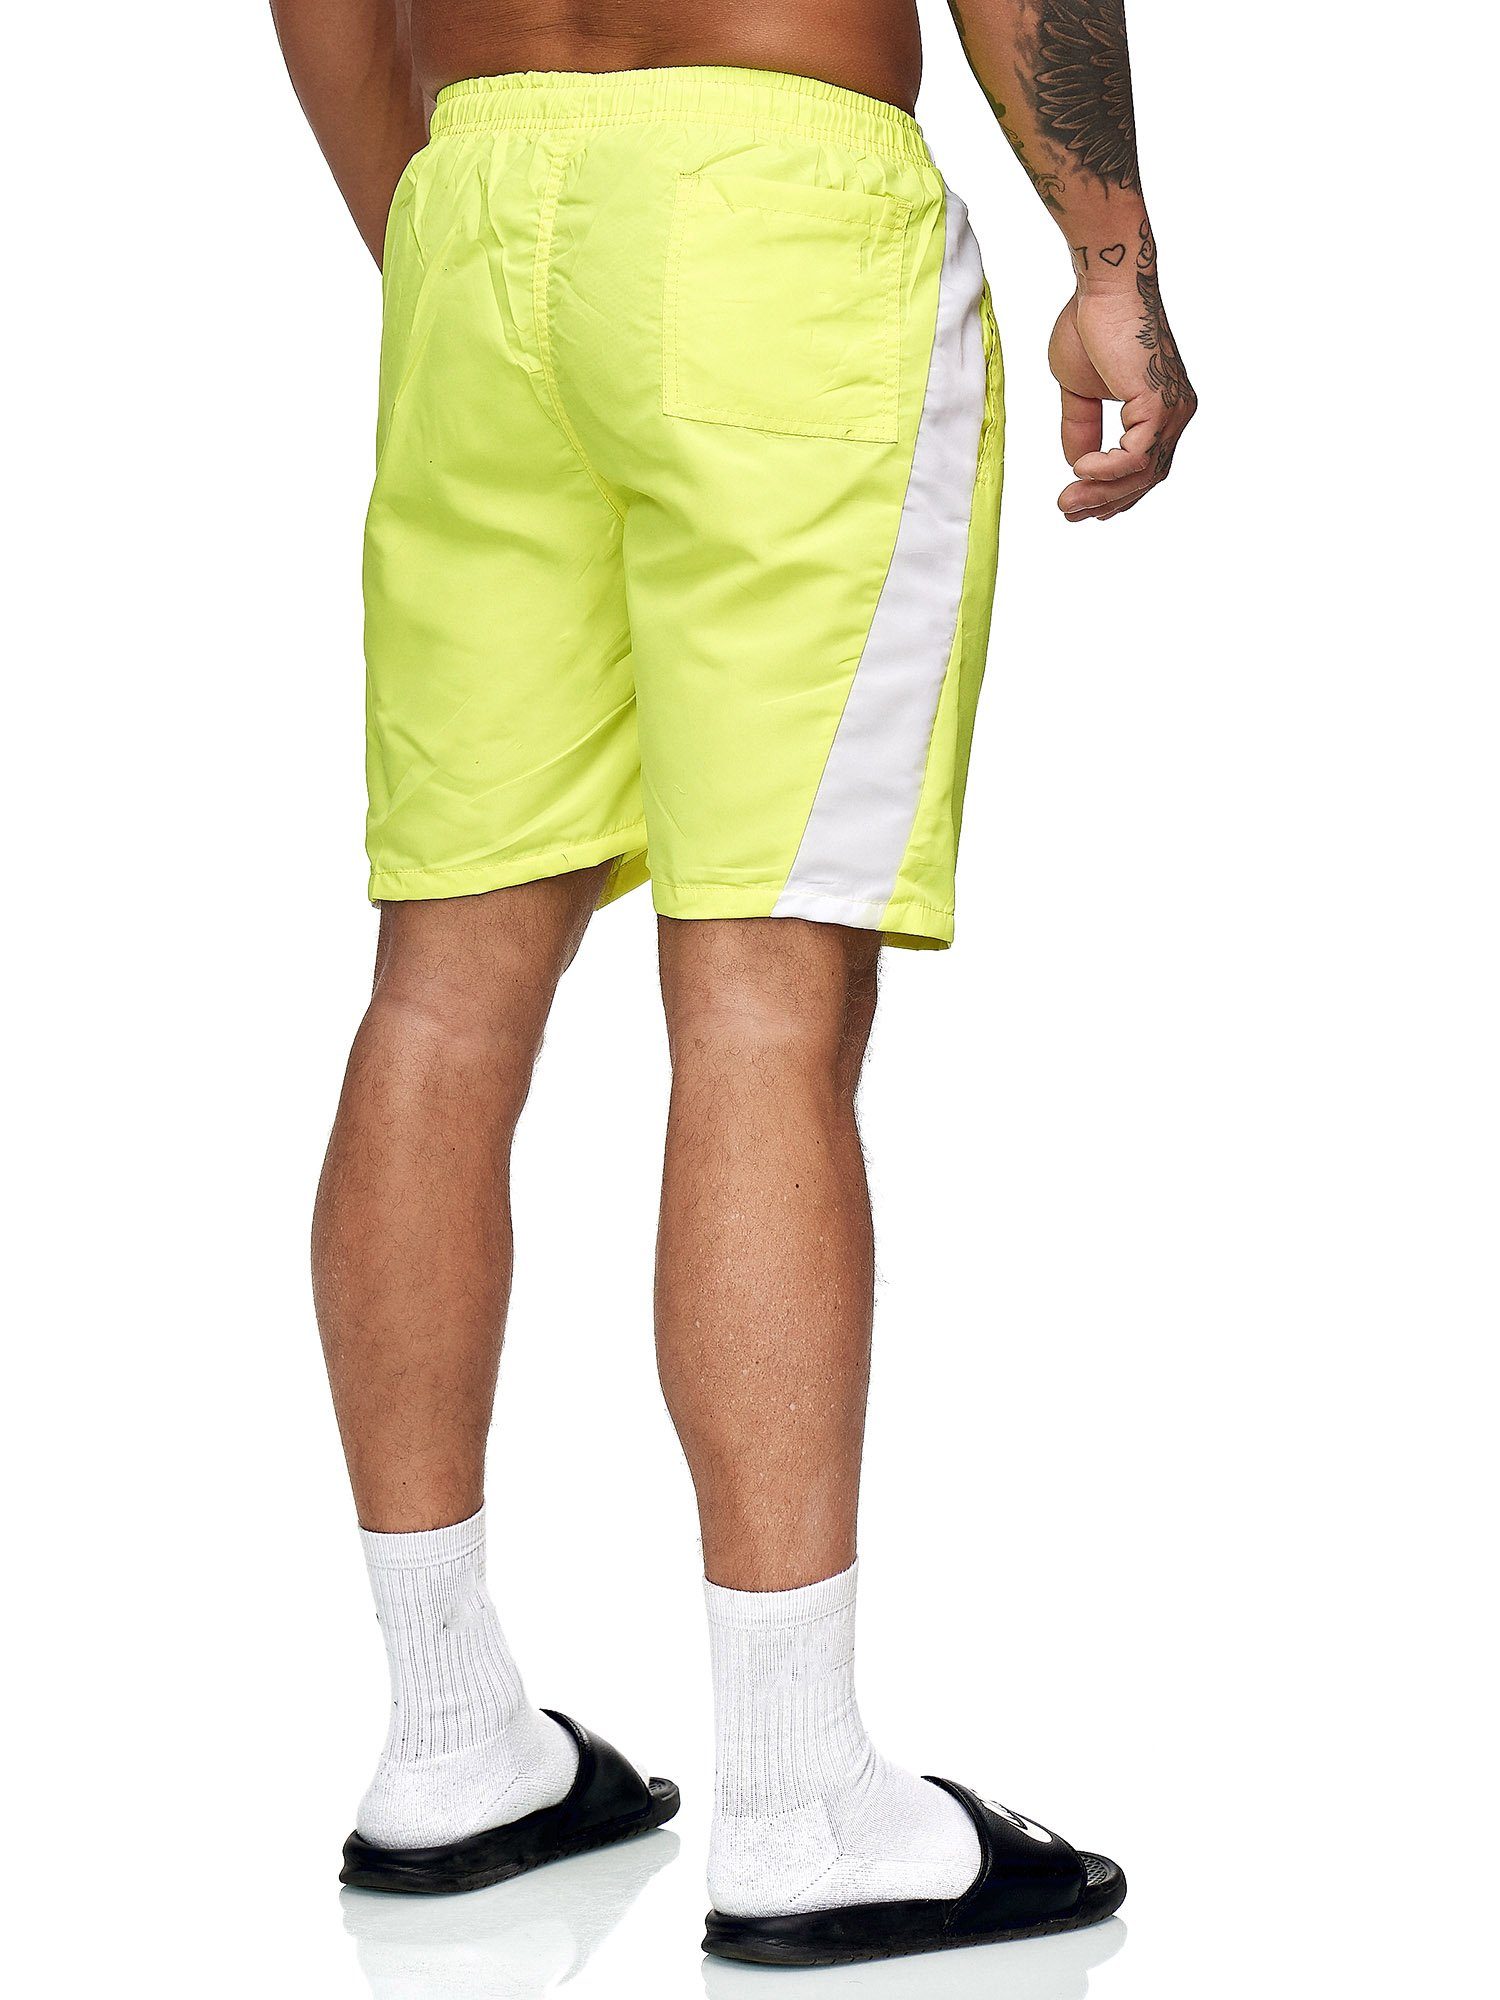 Weiss 400 Casual OneRedox Gelb modischem Hose Sweatpants, BH200 Freizeit im Fitness (Kurze Bermudas 1-tlg., Shorts Design)